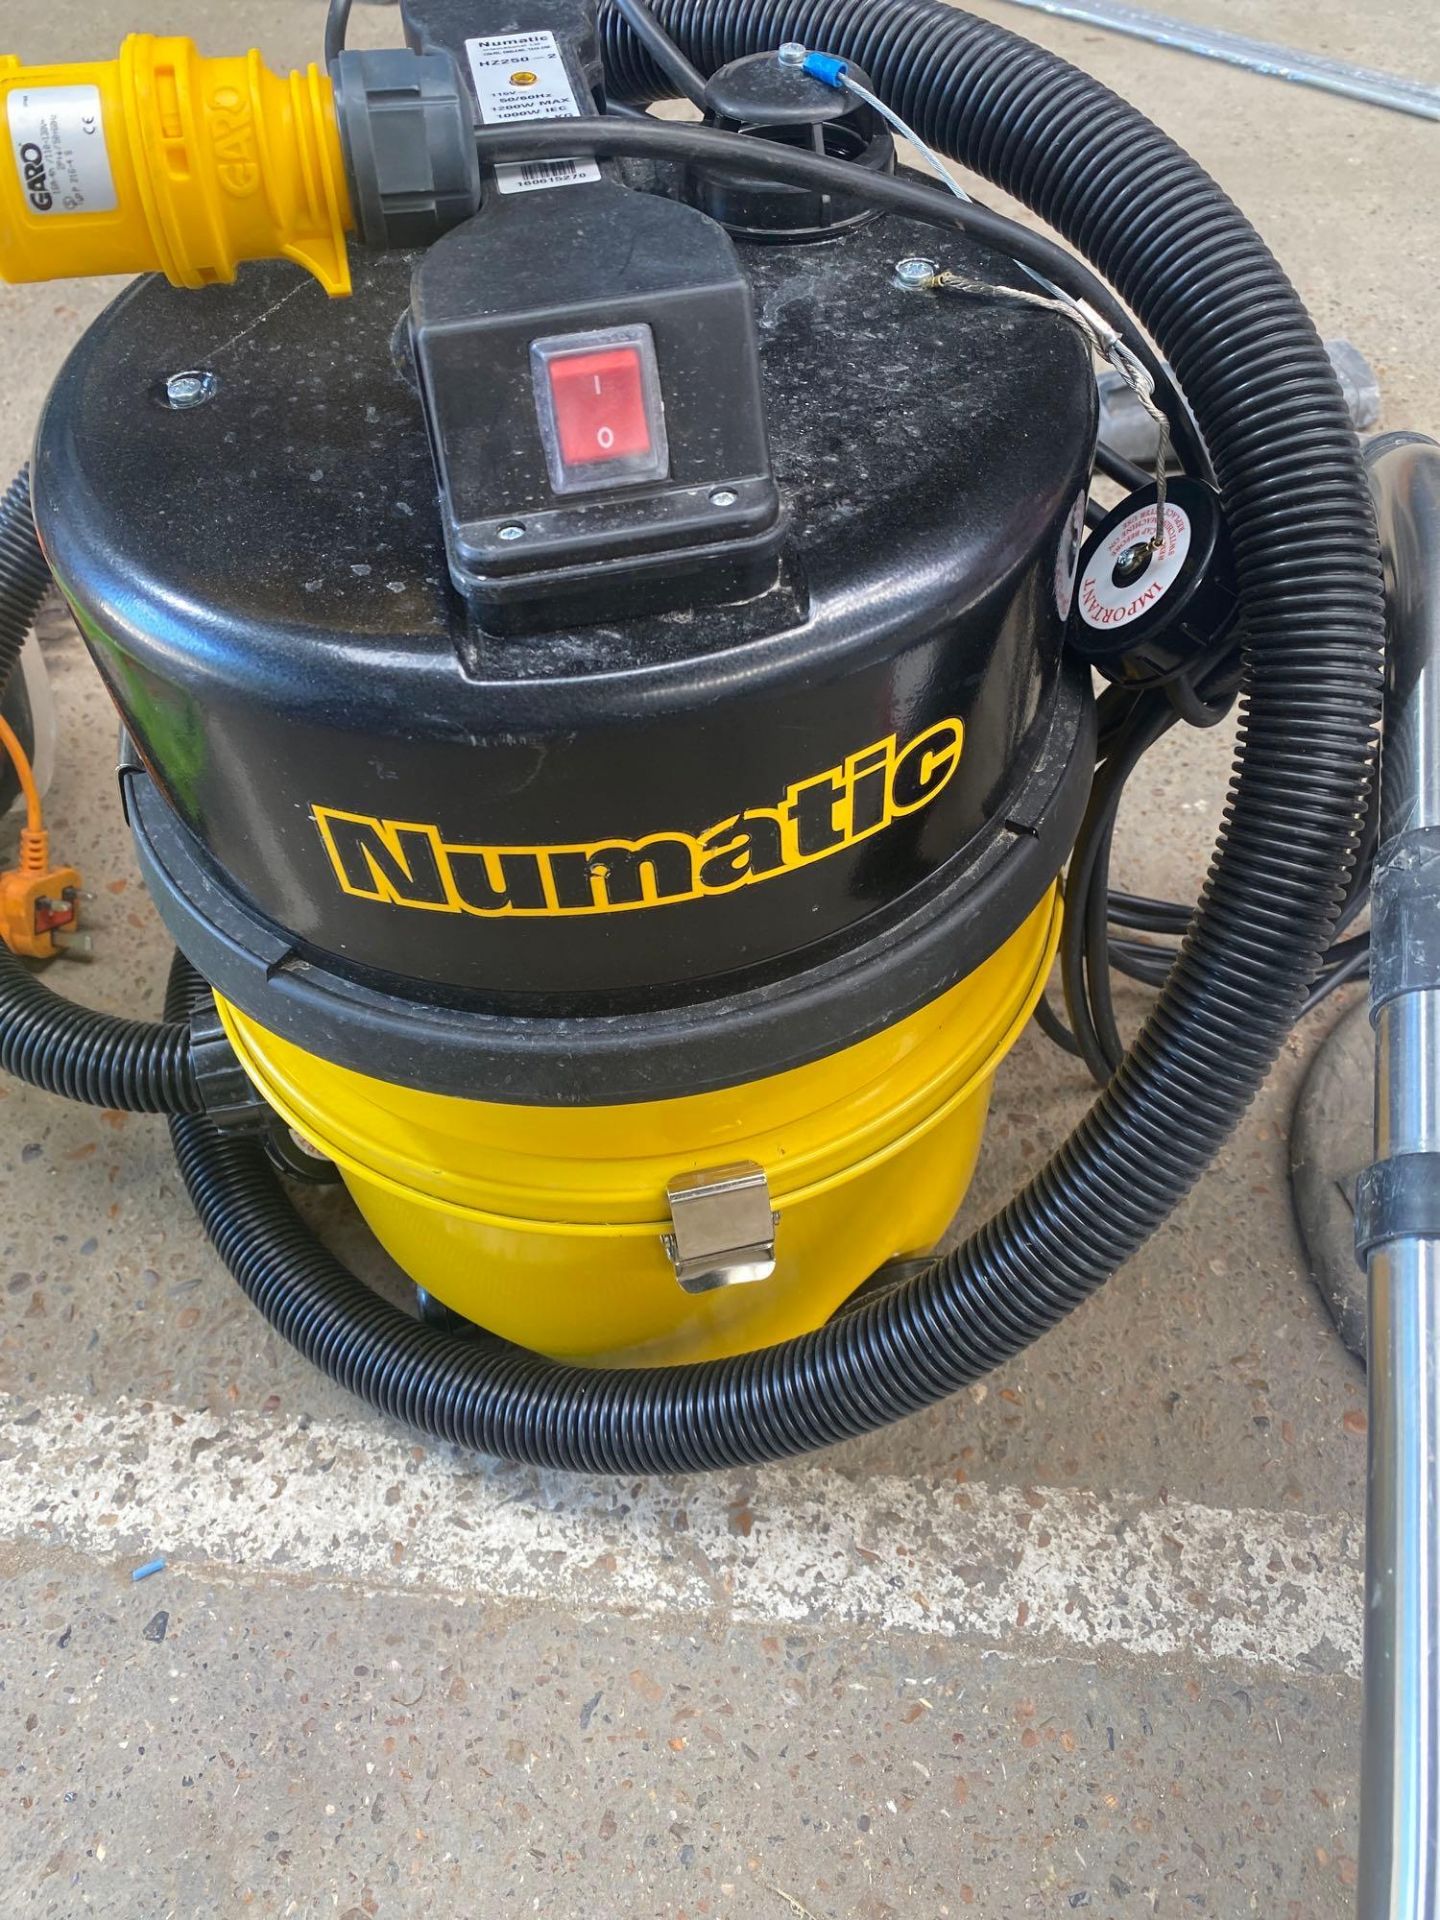 Numatic HZ 250 110V vacuum cleaner